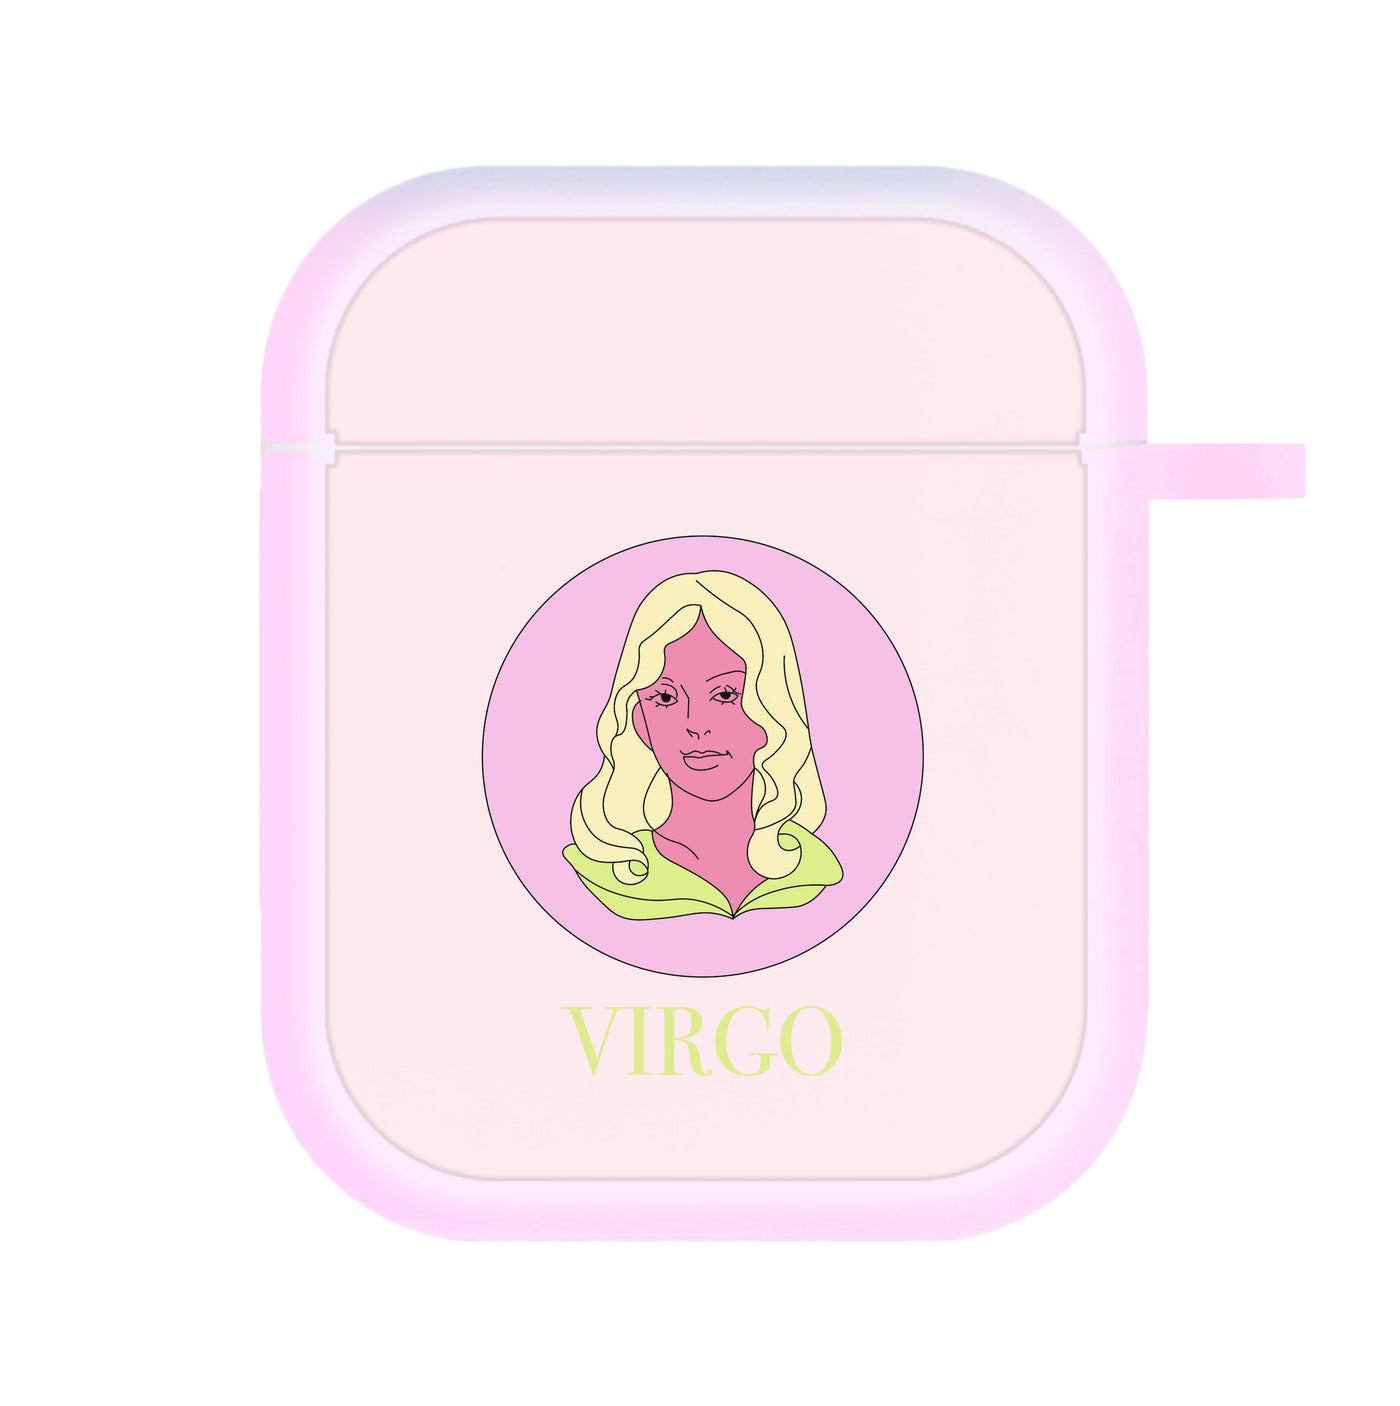 Virgo - Tarot Cards AirPods Case